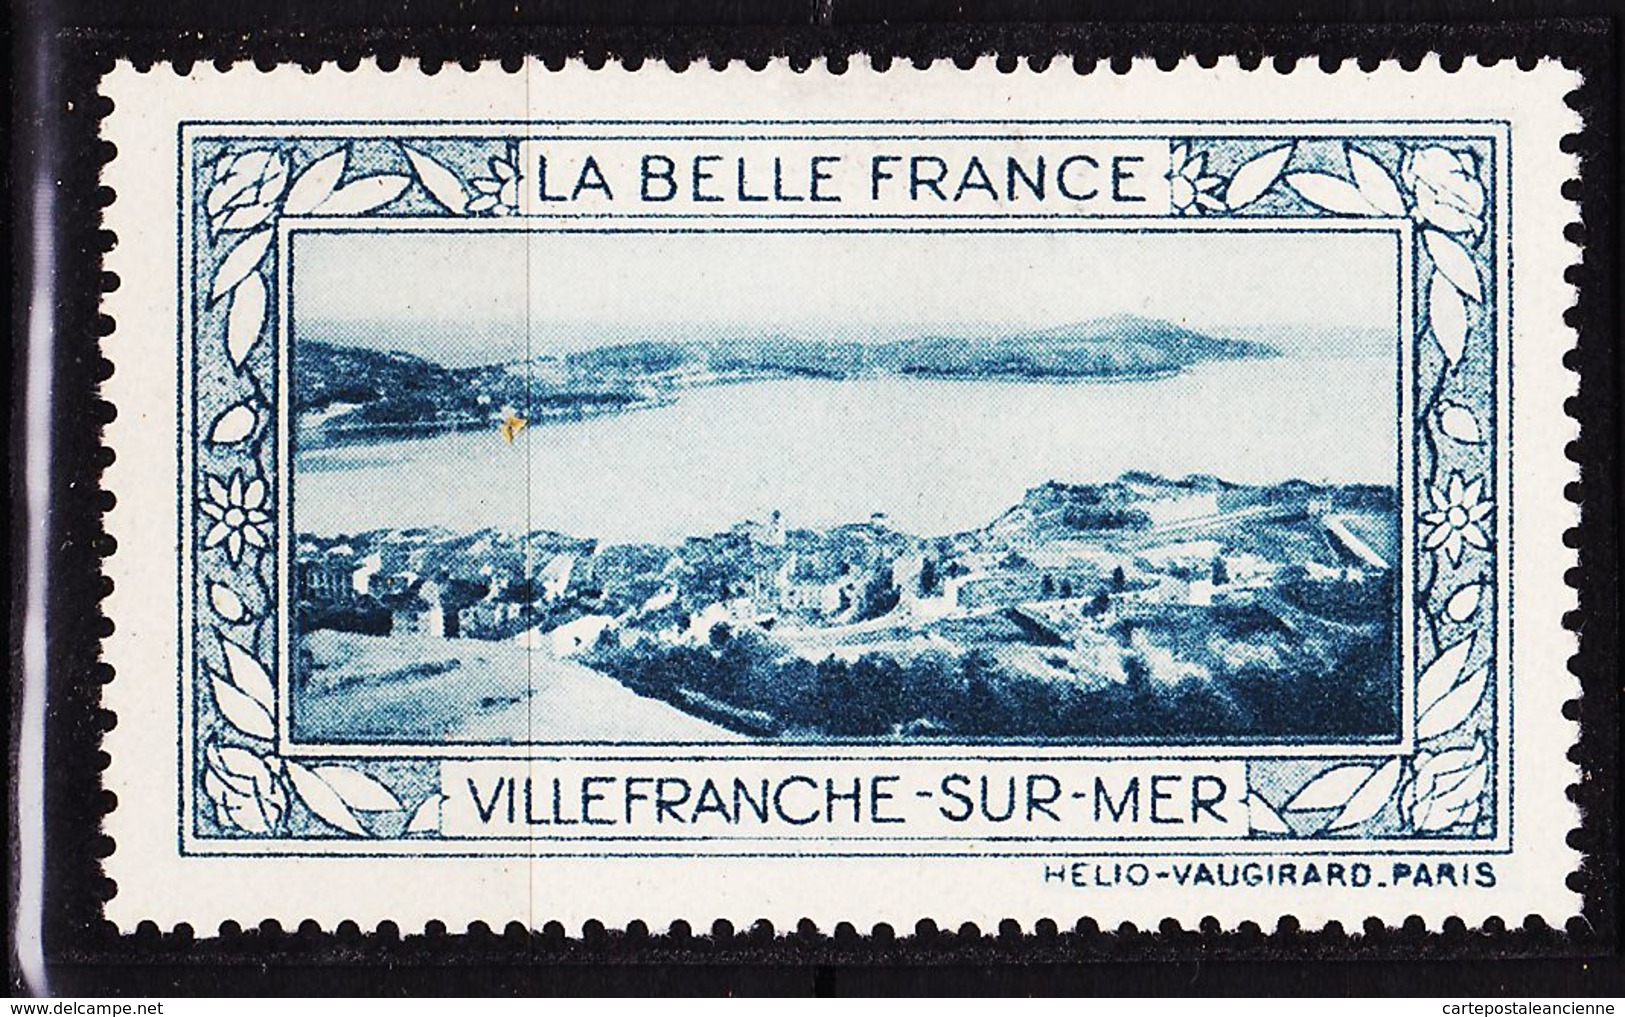 VIGN83 VILLEFRANCHE -SUR-MER Vignette De Collection LA BELLE FRANCE 1925s Helio VAUGIRARD PARIS Erinnophilie - Tourismus (Vignetten)